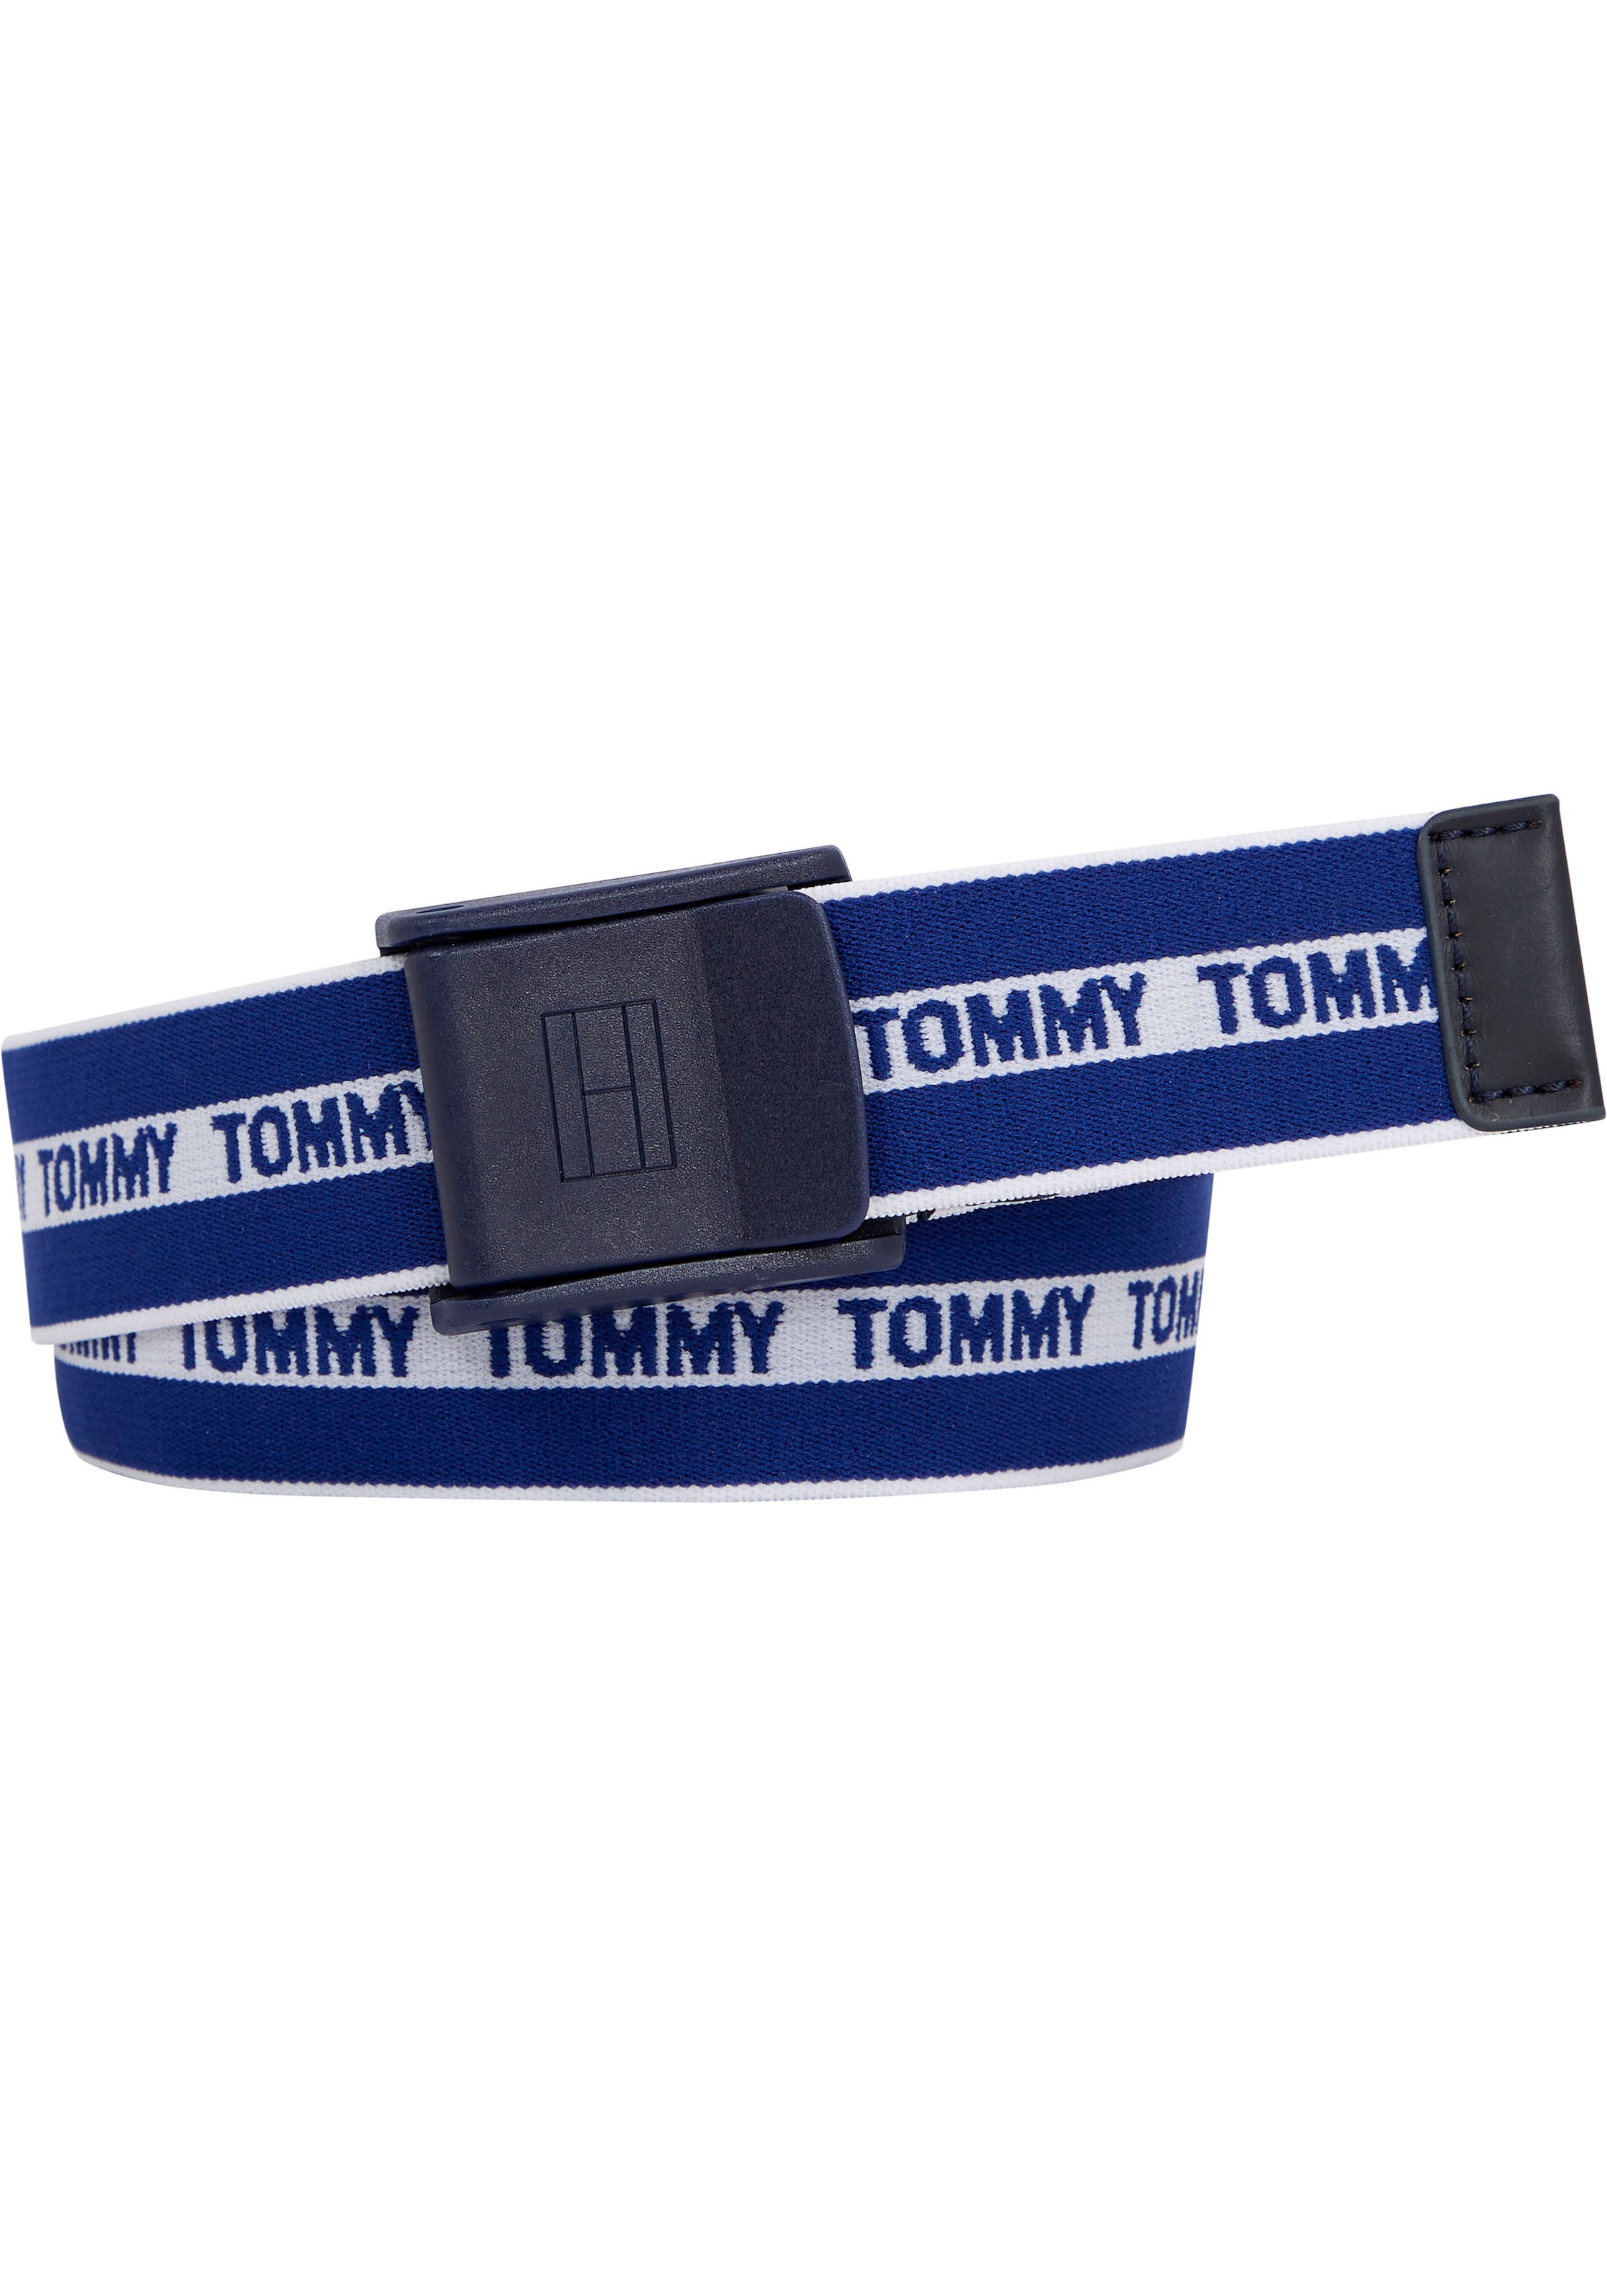 Tommy Jelmoli-Versand Hilfiger-Muster »Tommy entdecken online mit Hilfiger Webbing Stoffgürtel ✵ Tommy | wiederholendem Belt«,